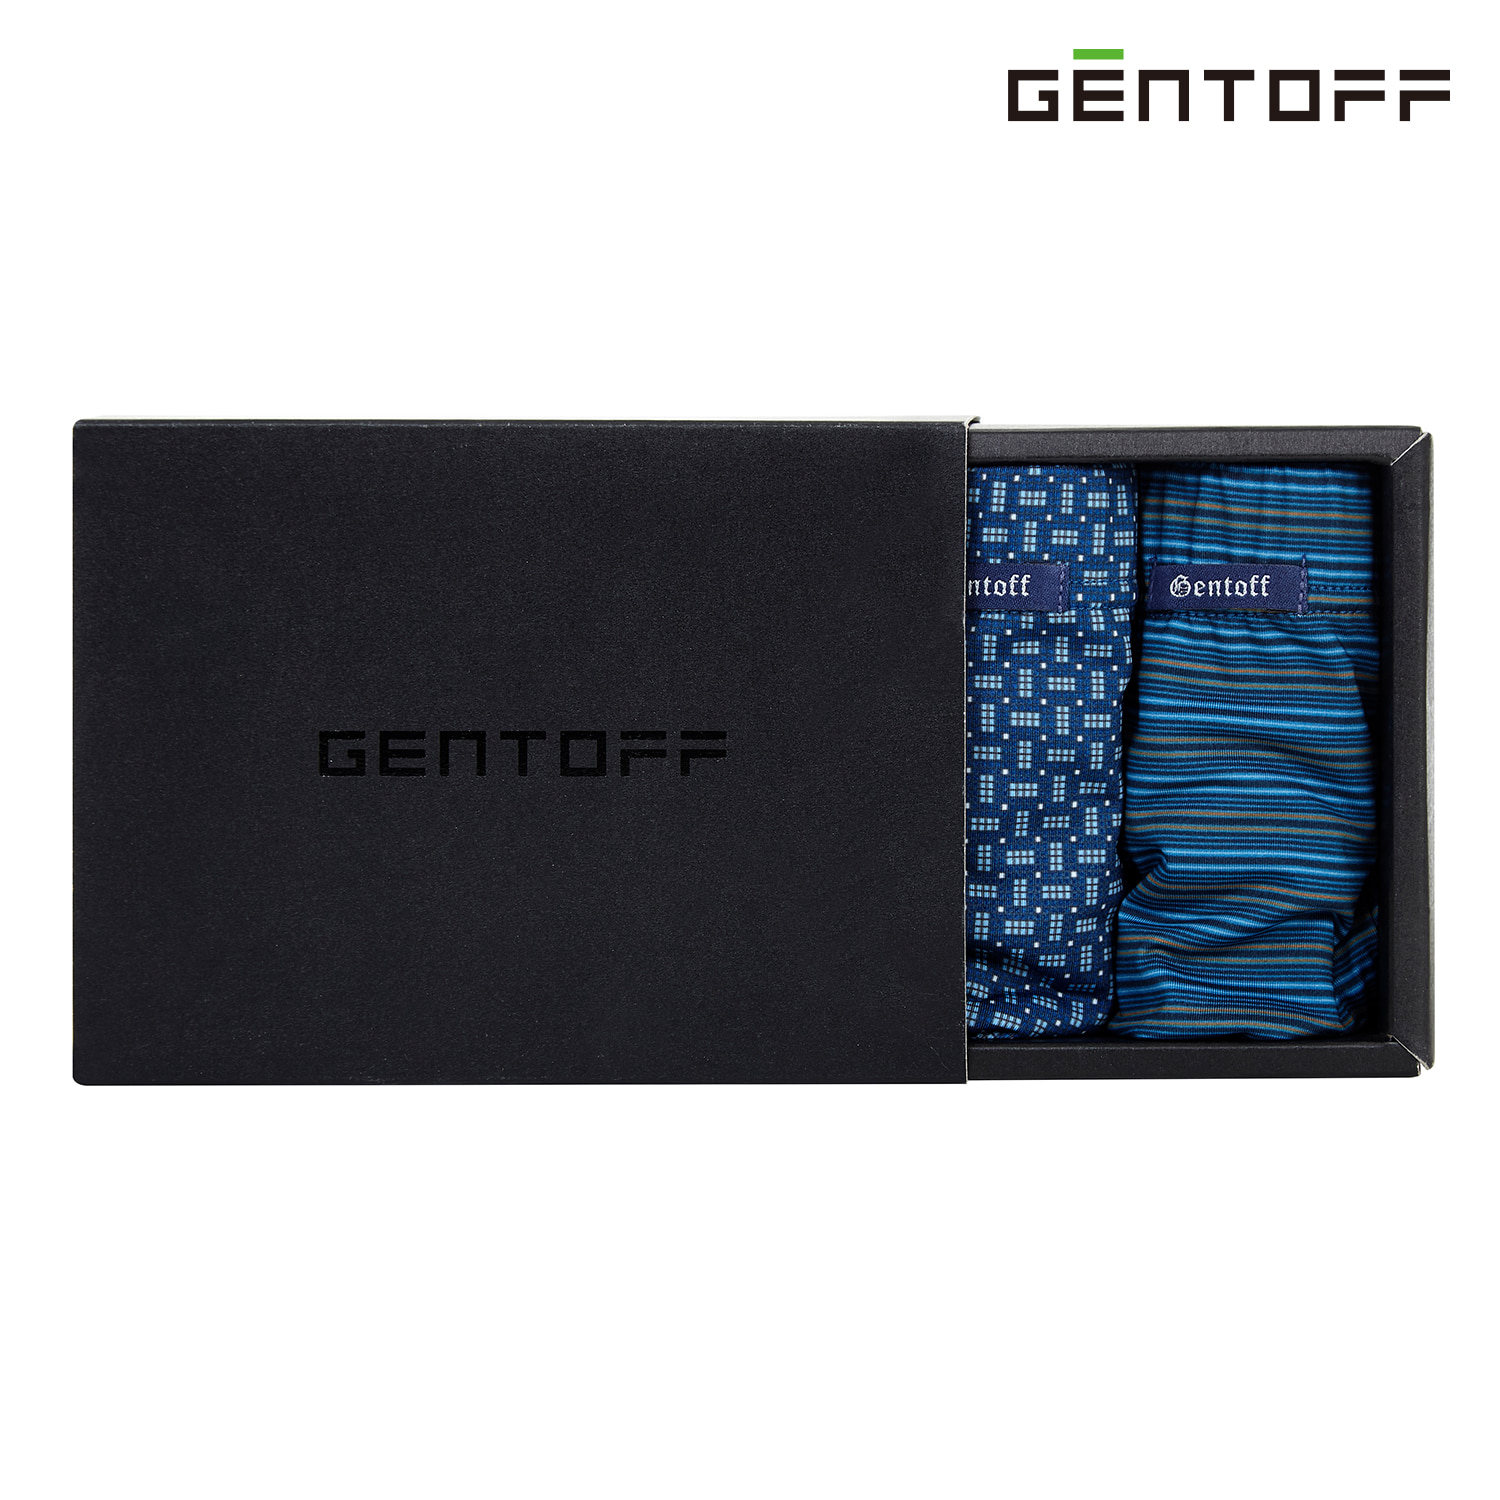 GENTOFF 비비안 남자속옷 블루 폴리스판 드로즈 2SET PT10D2S